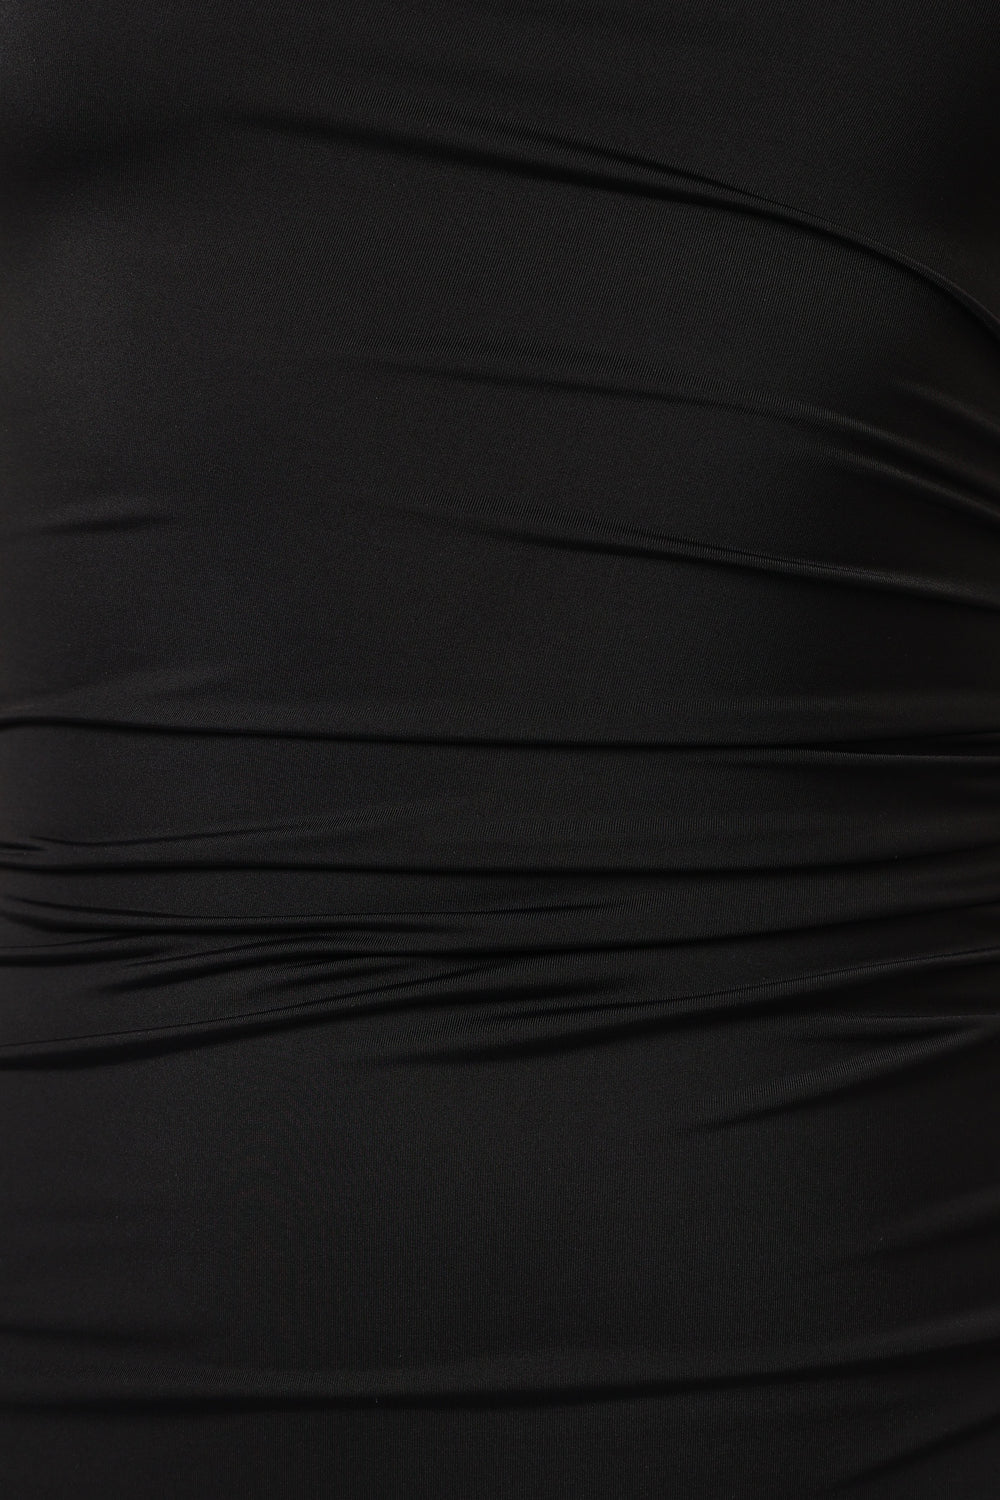 Petal and Pup USA DRESSES Avila One Shoulder Maxi Dress - Black